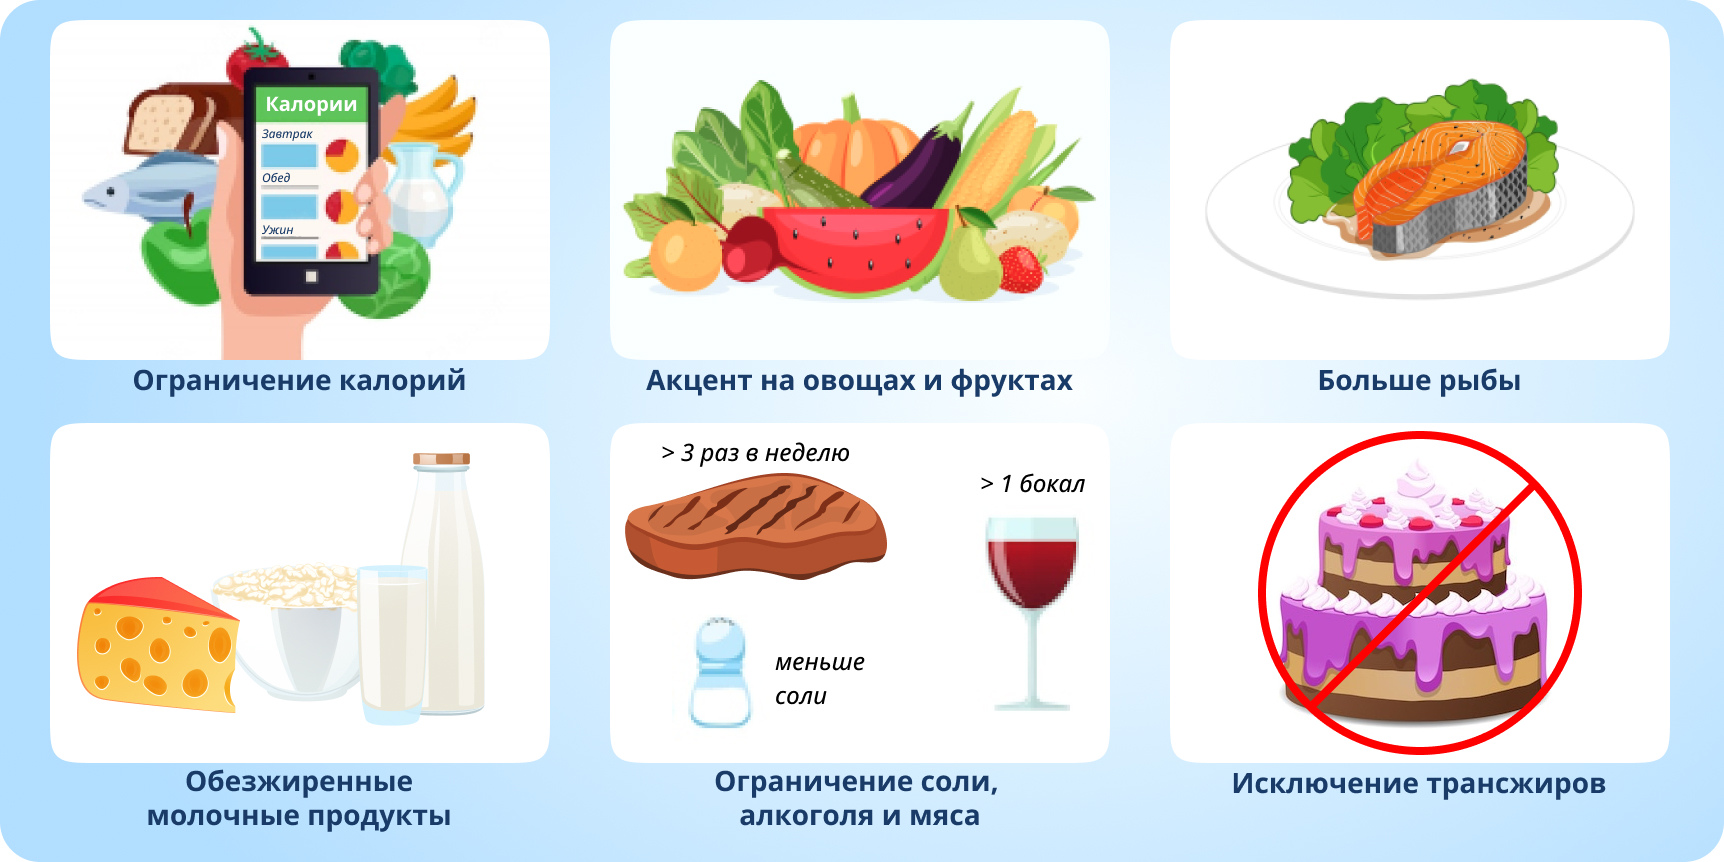 Лечение гипертонии голоданием | spagolod.ru